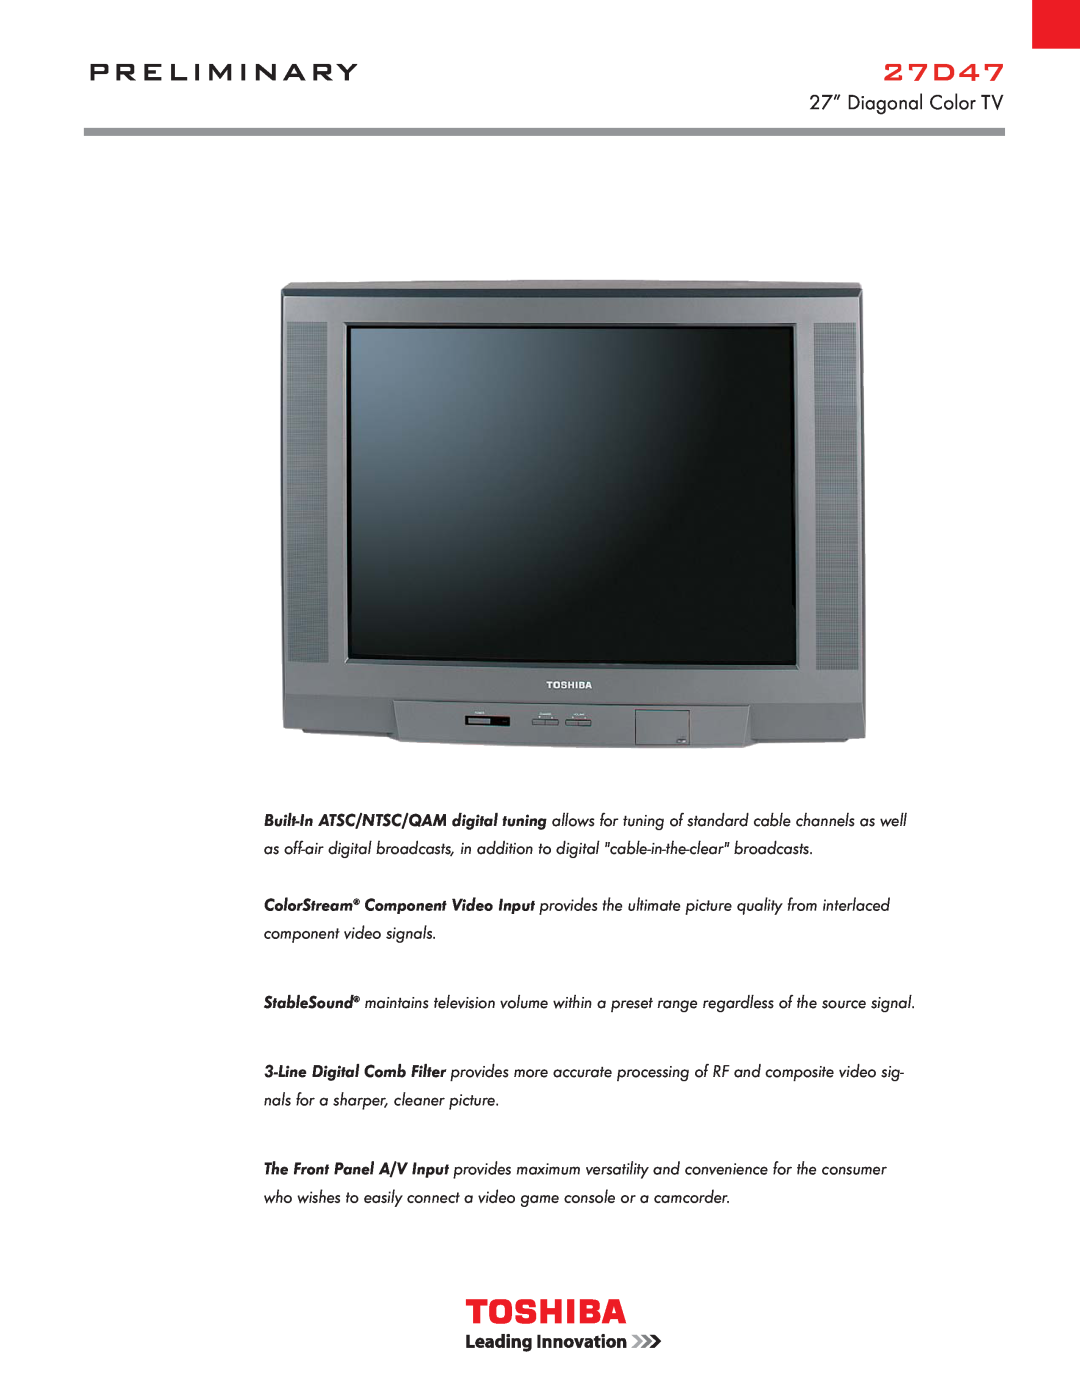 Toshiba 27D47 manual Preliminary, 27” Diagonal Color TV 